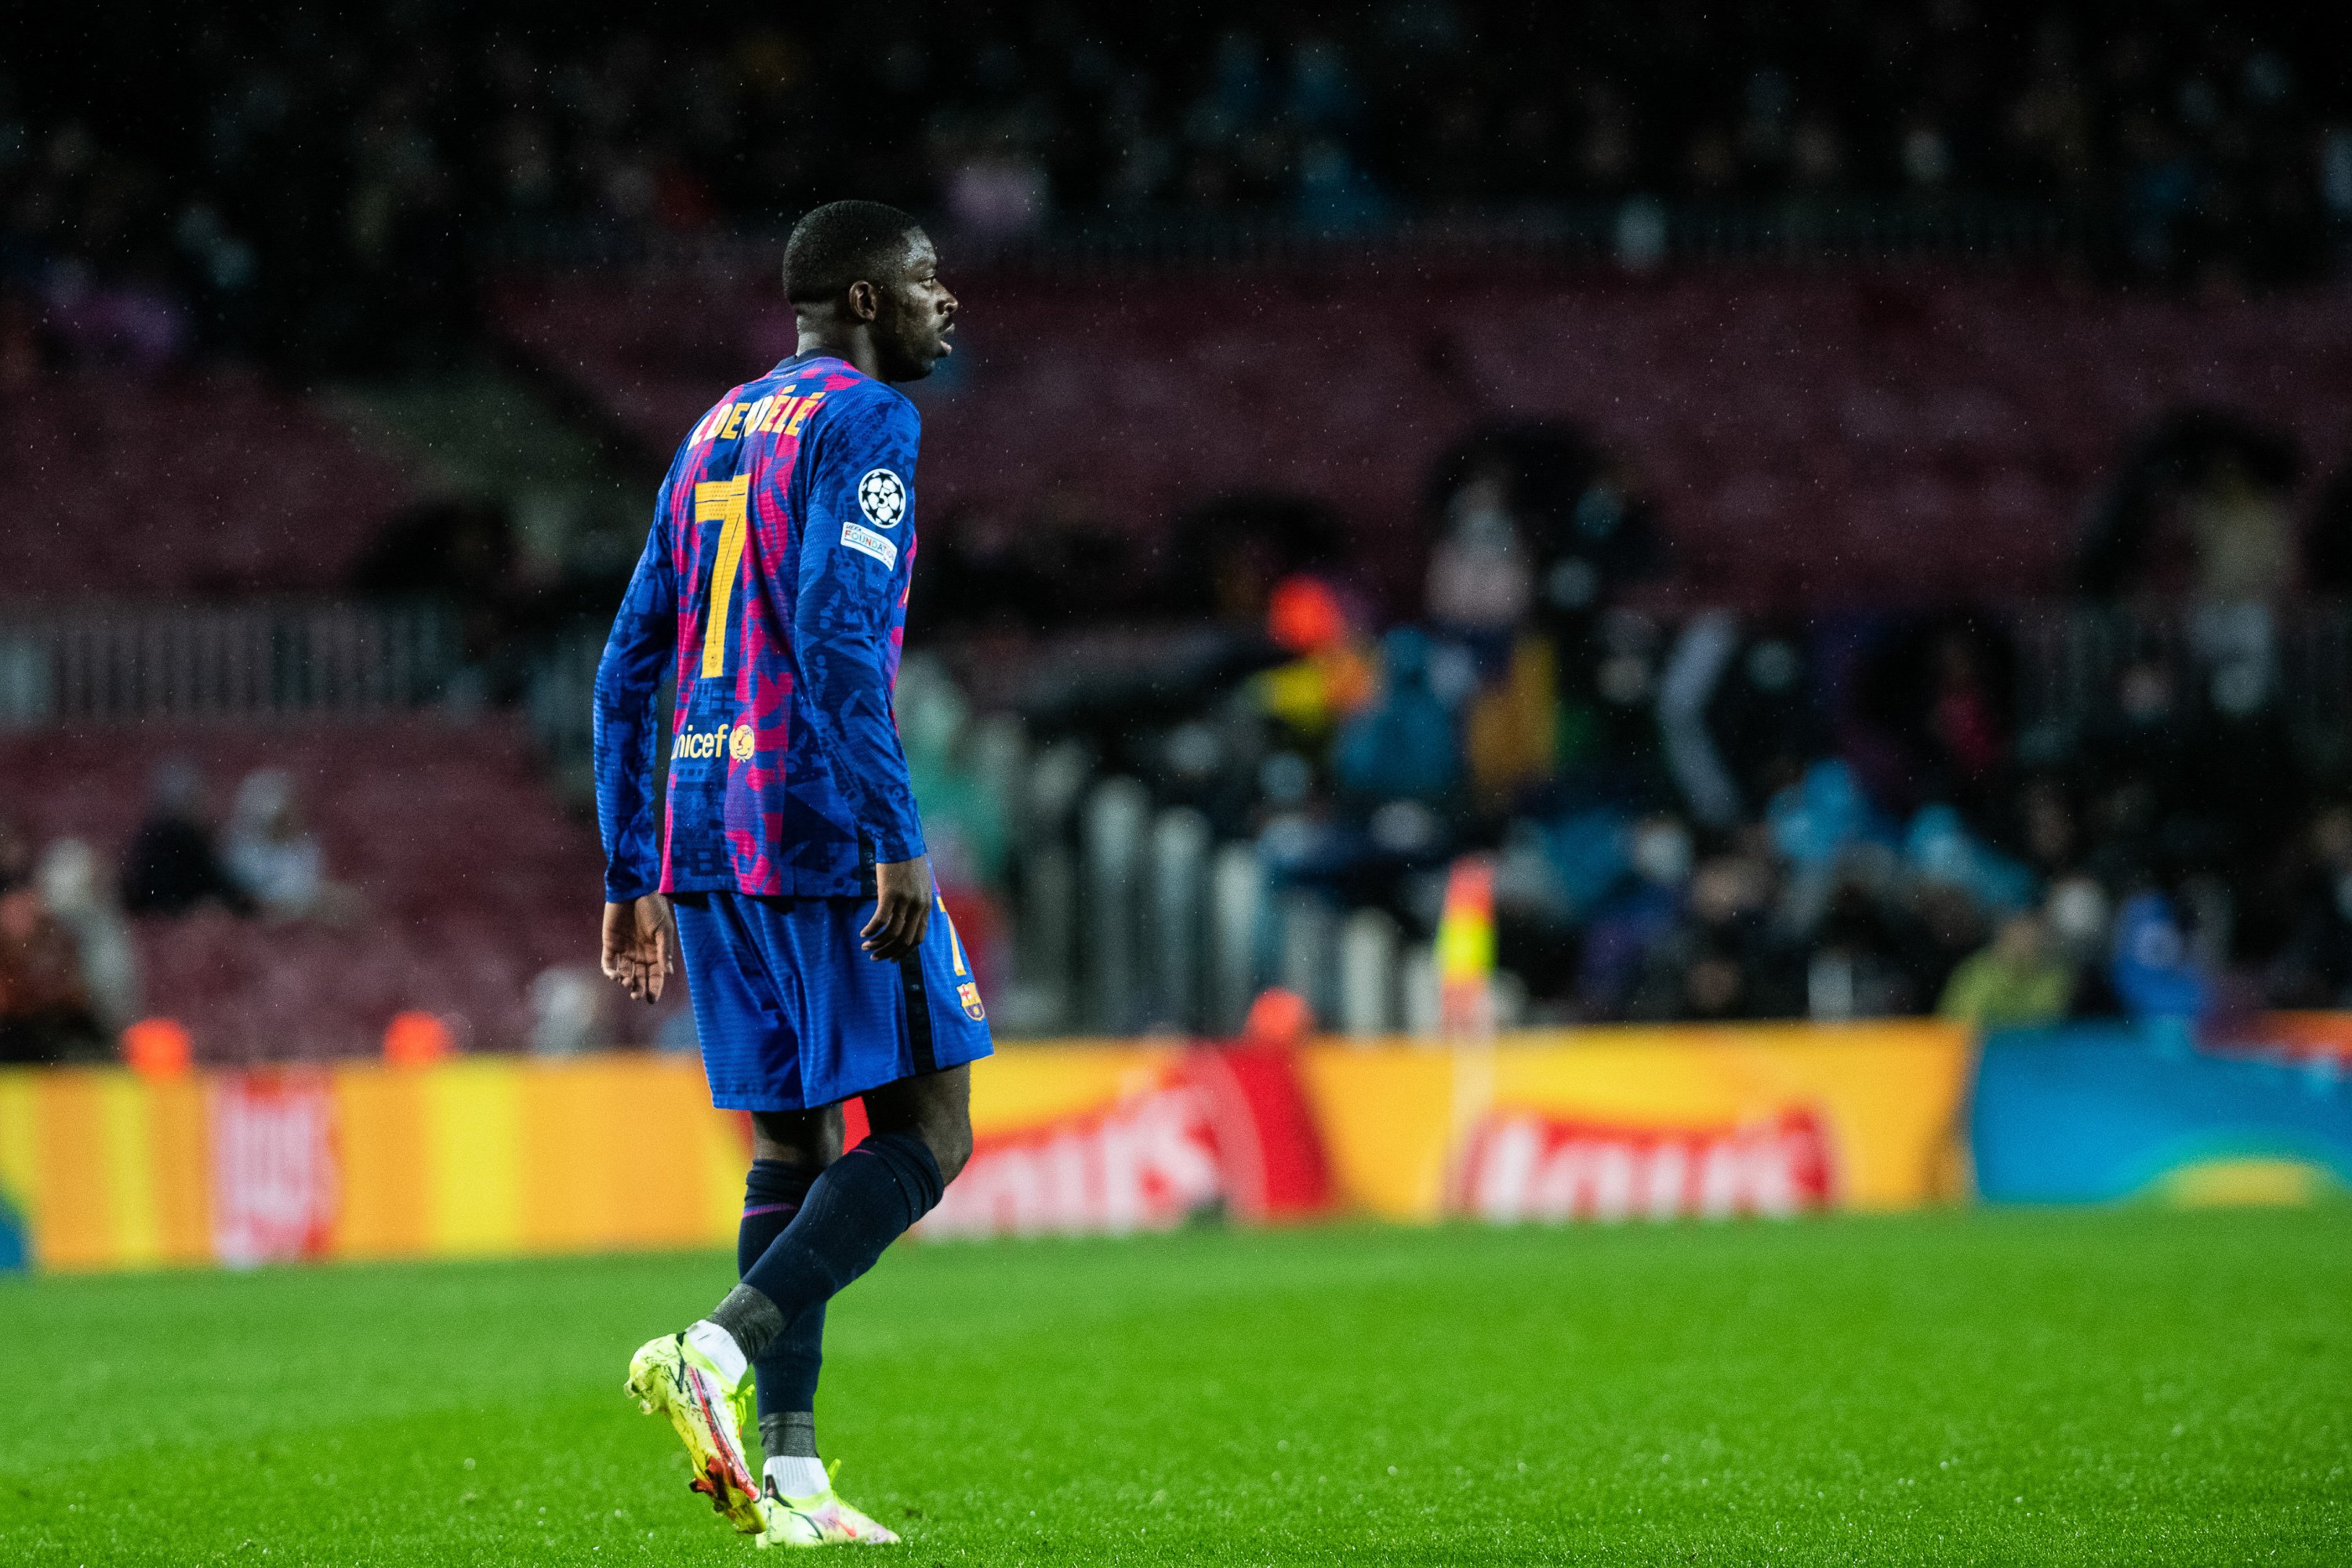 Llevará el 7 de Dembélé en el Barça: Joan Laporta no espera más y ofrece jugadores y millones